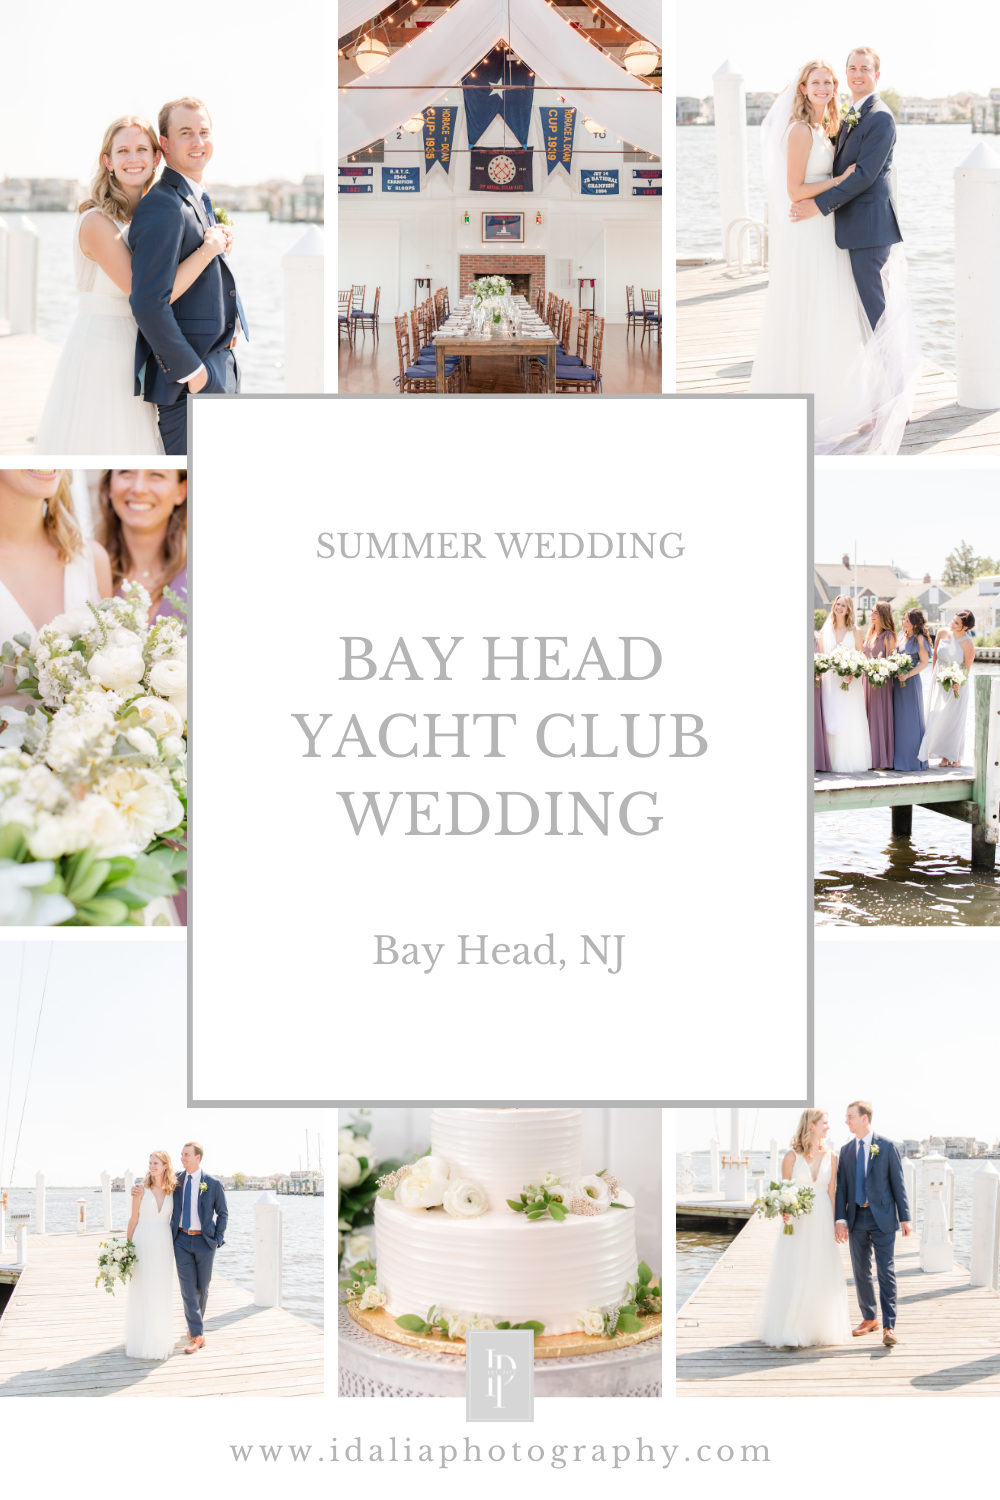 Bay Head Yacht Club wedding day